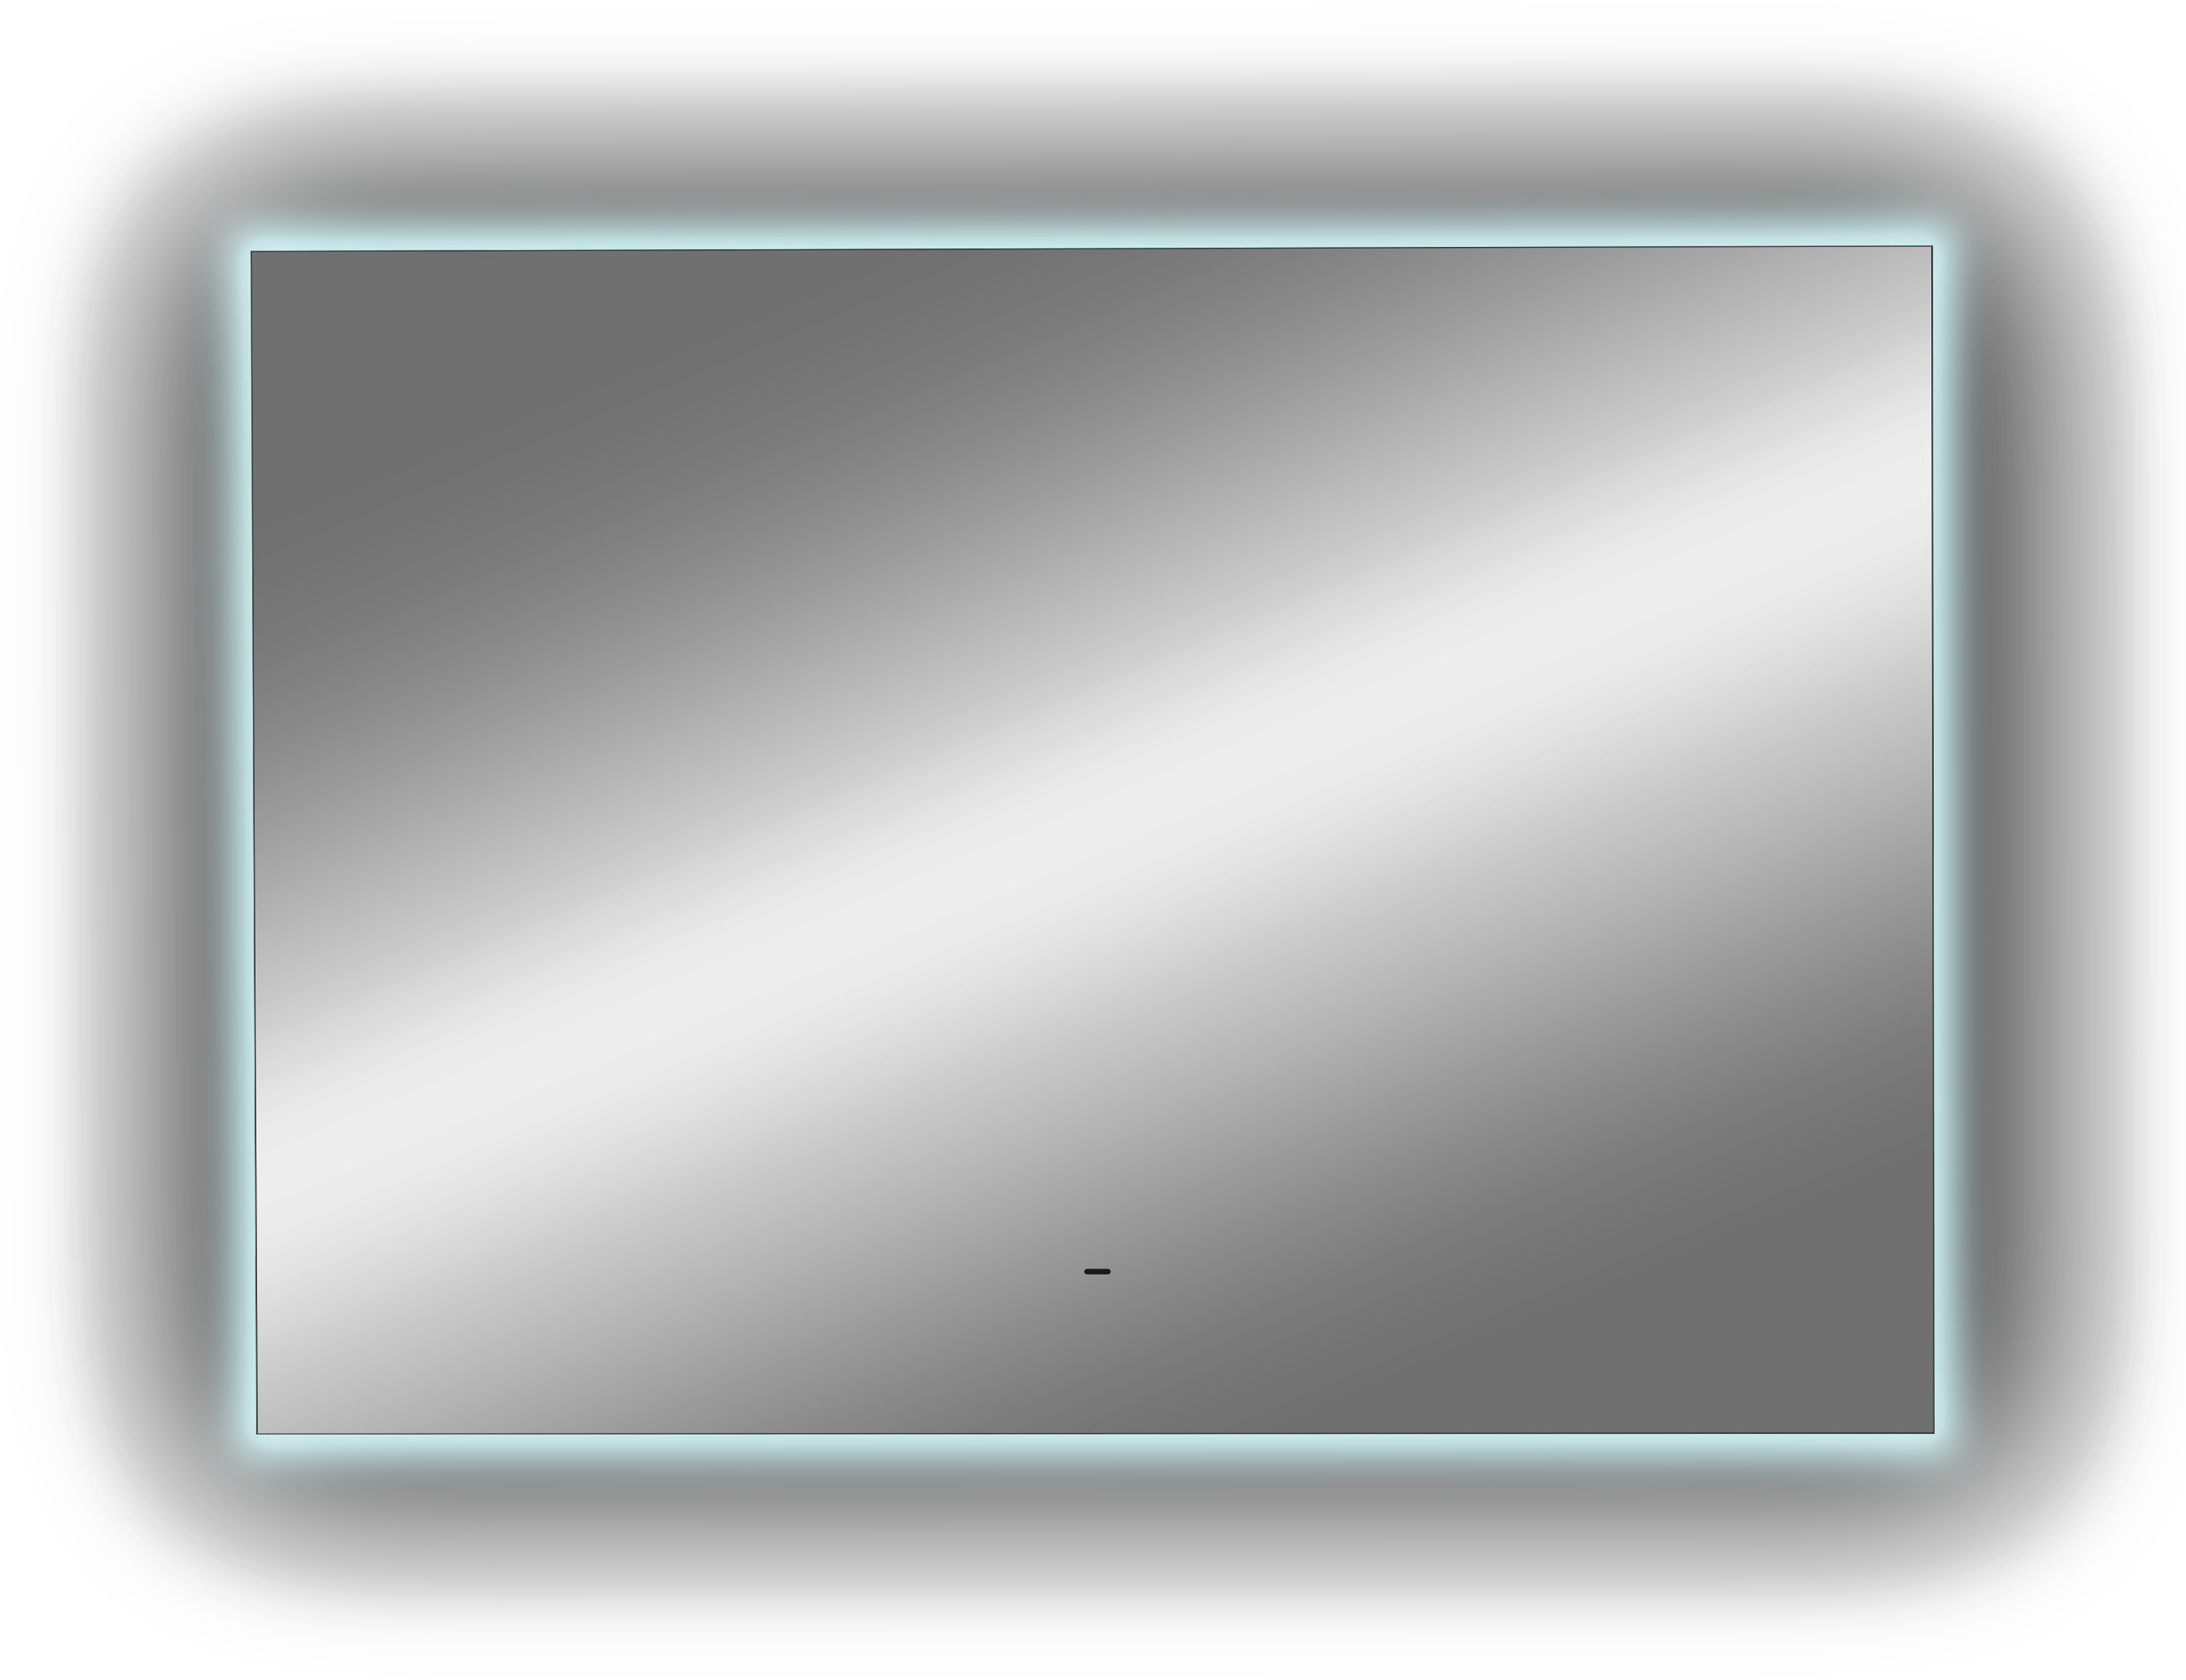 Зеркало DIWO Элиста 100 с подсветкой светодиодной, прямоугольное инфракрасный выключатель ЗЛП1746 - 7